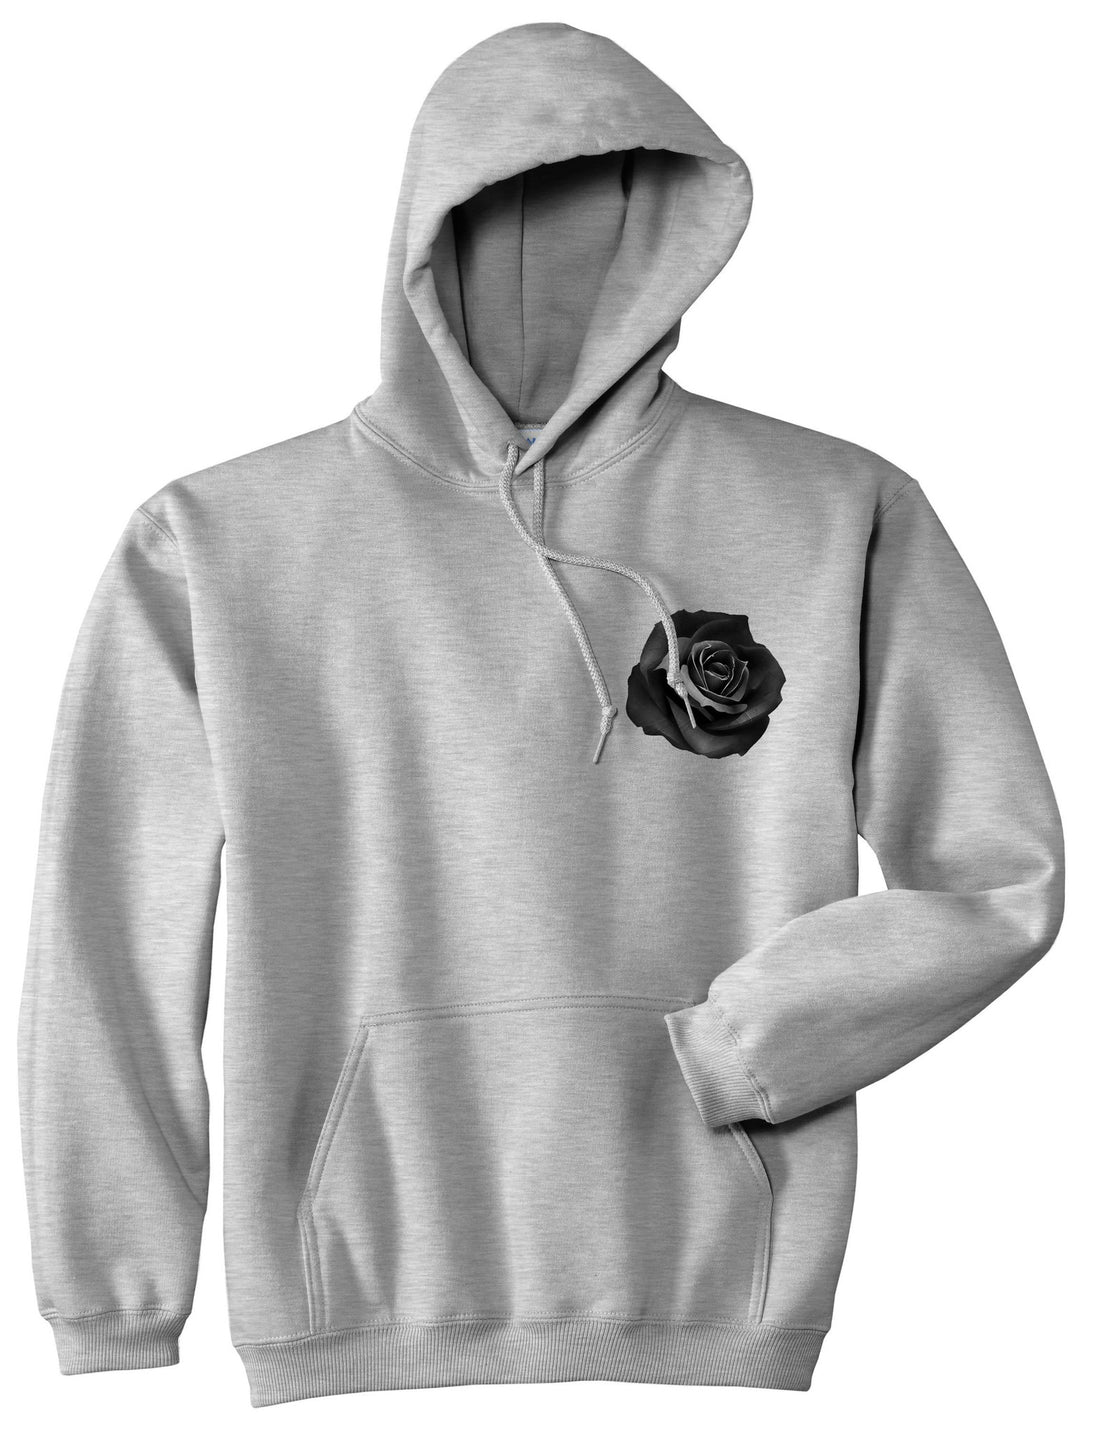 Black Noir Rose Flower Chest Logo Boys Kids Pullover Hoodie Hoody in Grey By Kings Of NY